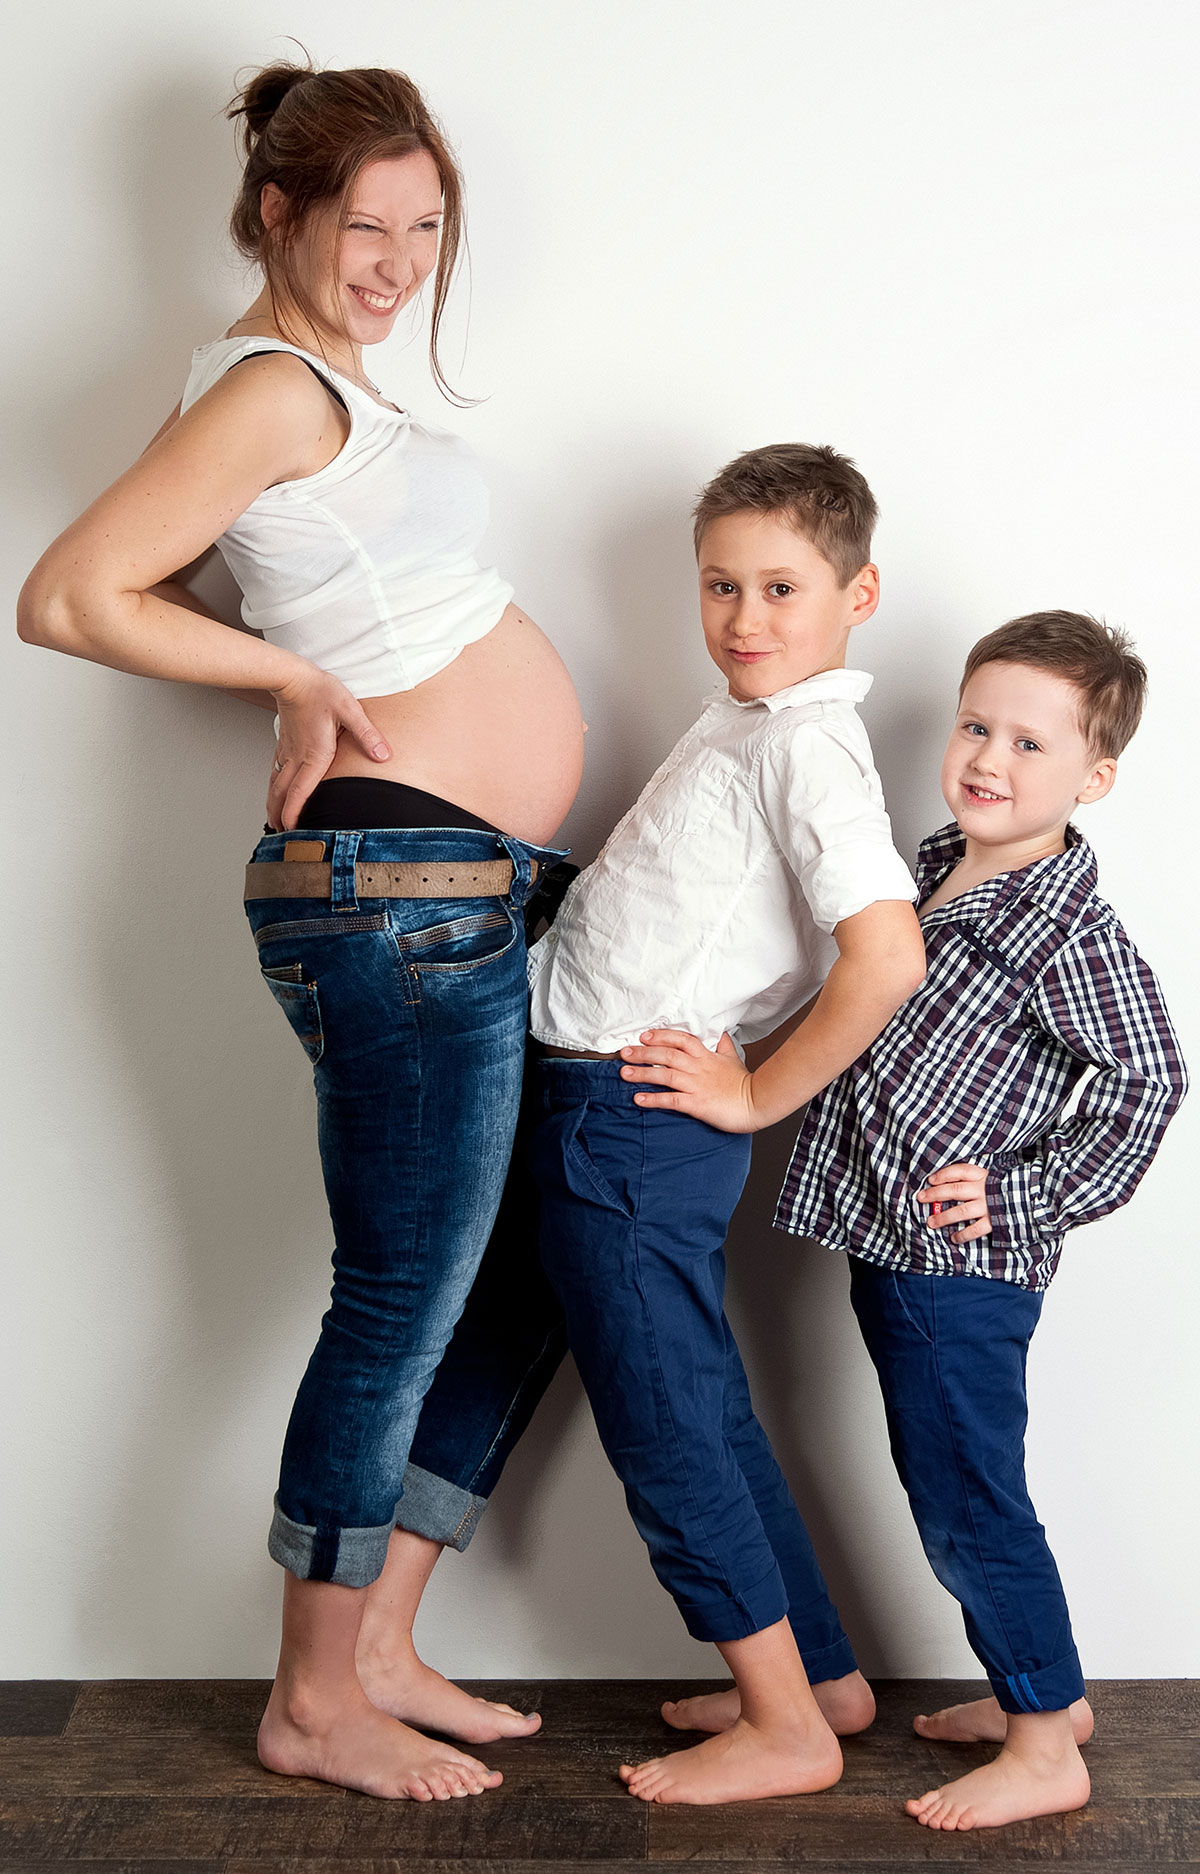 Schwangeren- und Familienportraits - Jetzt Termin vereinbaren